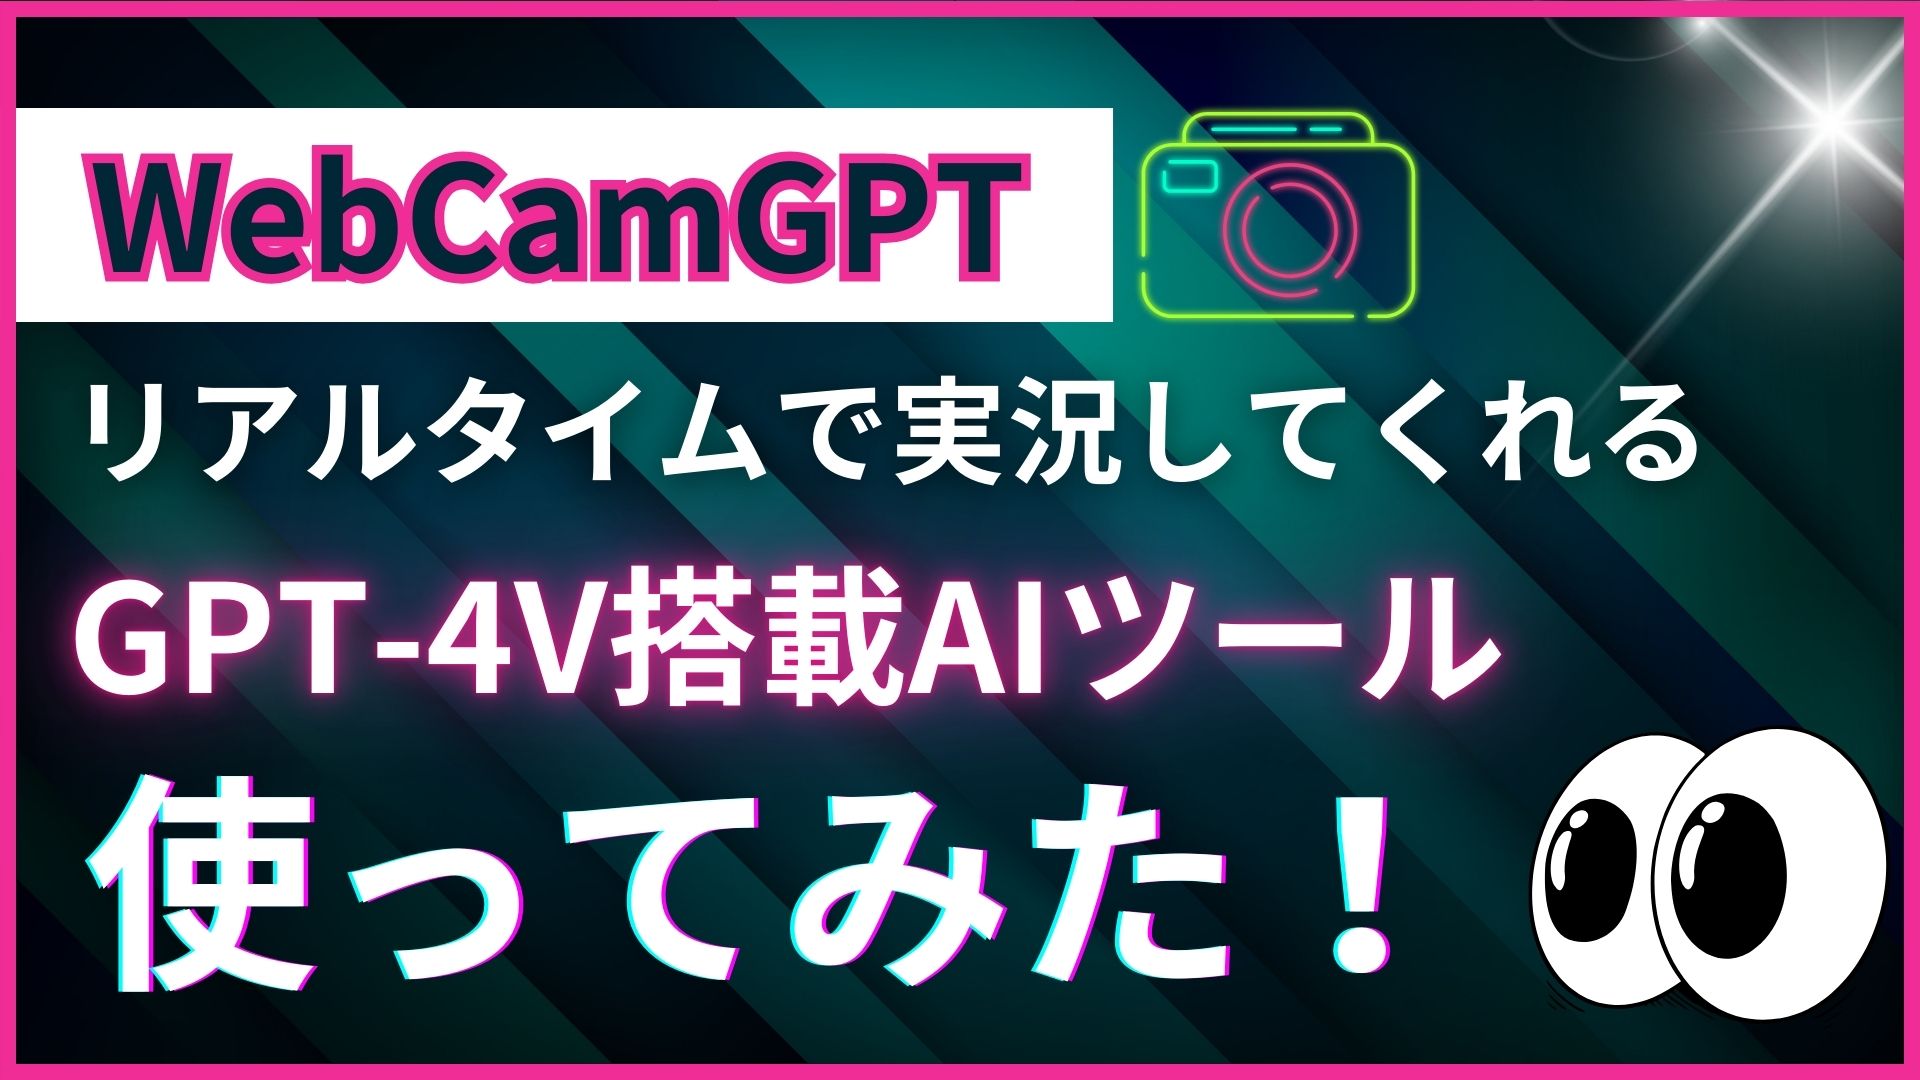 WebCamGPT GPT-4V API ツール